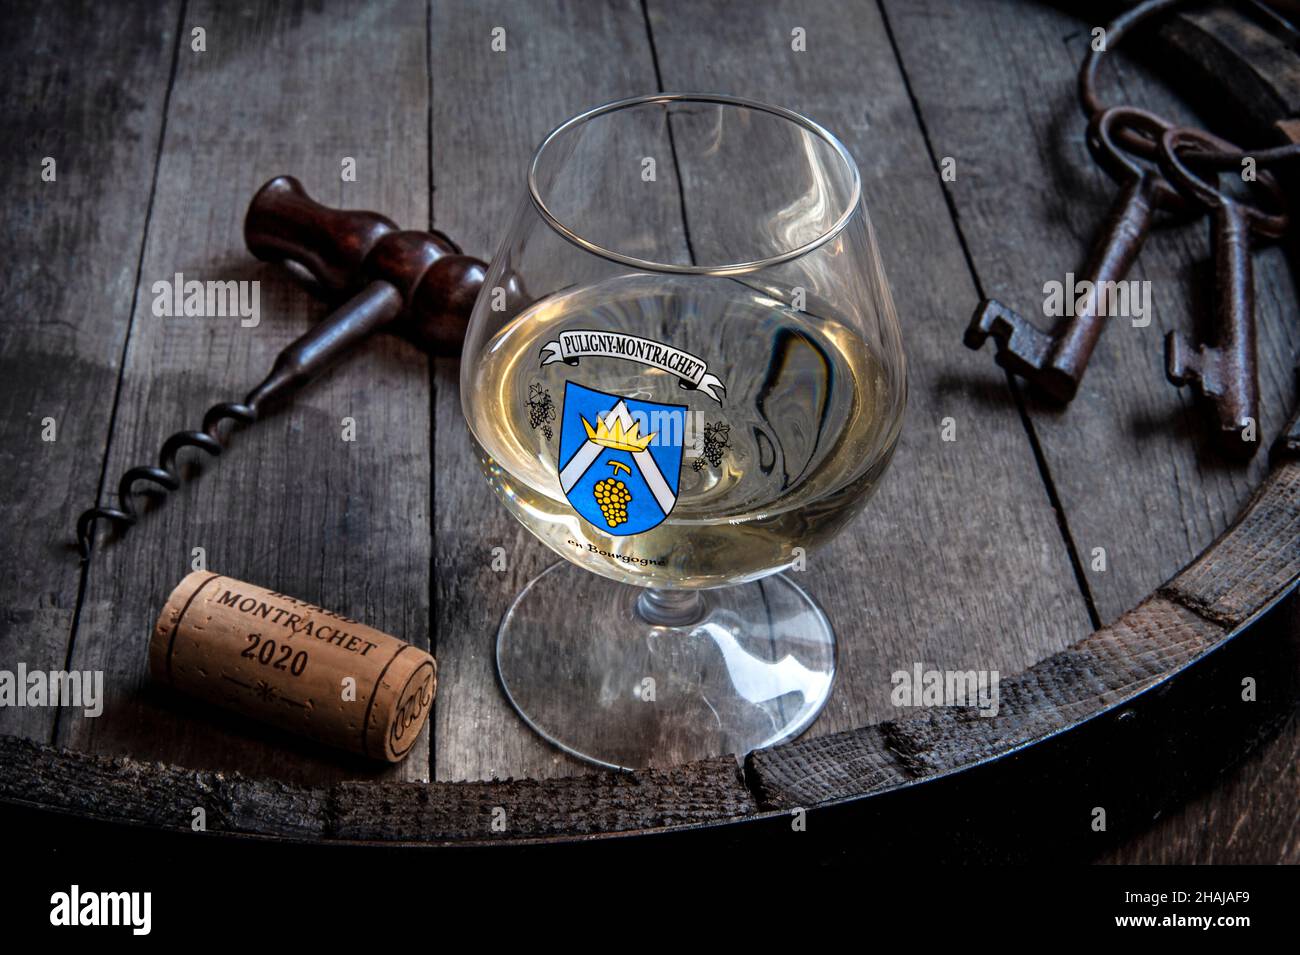 PULIGNY-MONTRACHET 2020 viaggio degustazione vino francese situazione in cantina degustazione con bicchiere di Puligny-Montrachet vino bianco Borgogna Cote d'Or Foto Stock